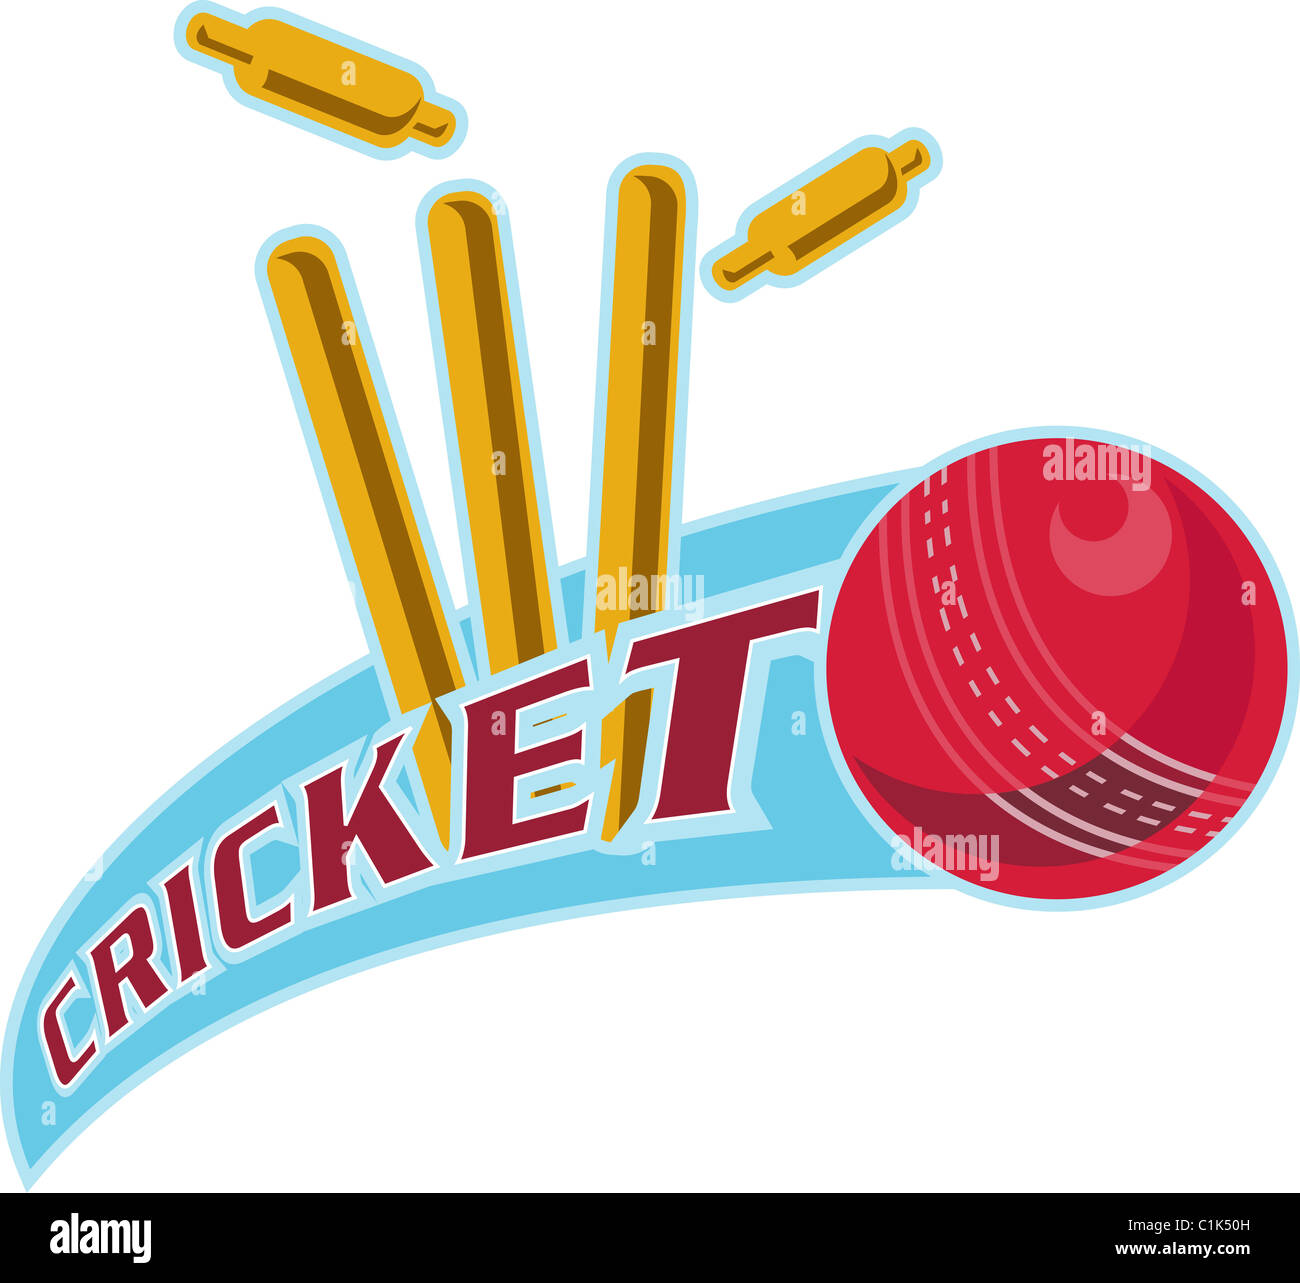 Beispiel für ein Cricketball trifft bowling über Wicket mit Worten "Cricket" Stockfoto